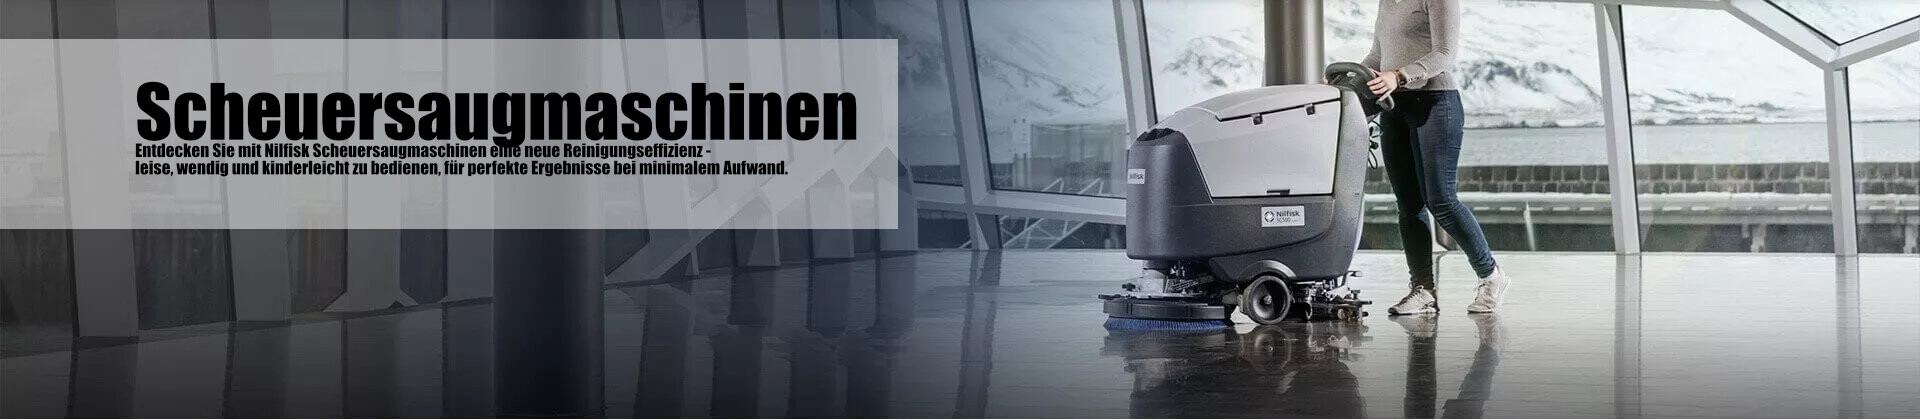 Bild einer Nilfisk Scheuersaugmaschine, die höchste Effizienz und glänzende Sauberkeit auf jeder Oberfläche im Flughafen gewährleistet.